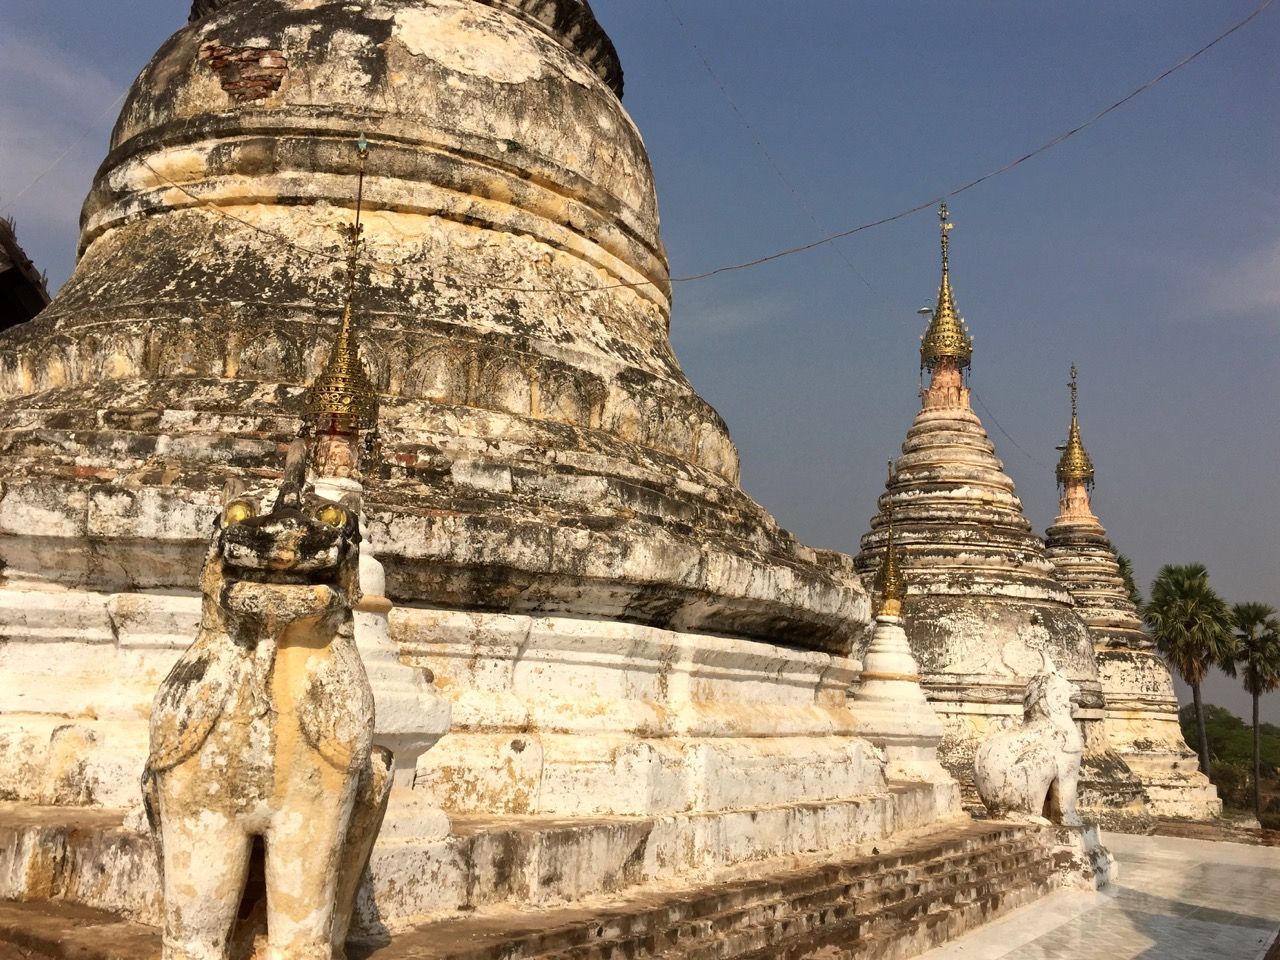 Three white stupas in a row.